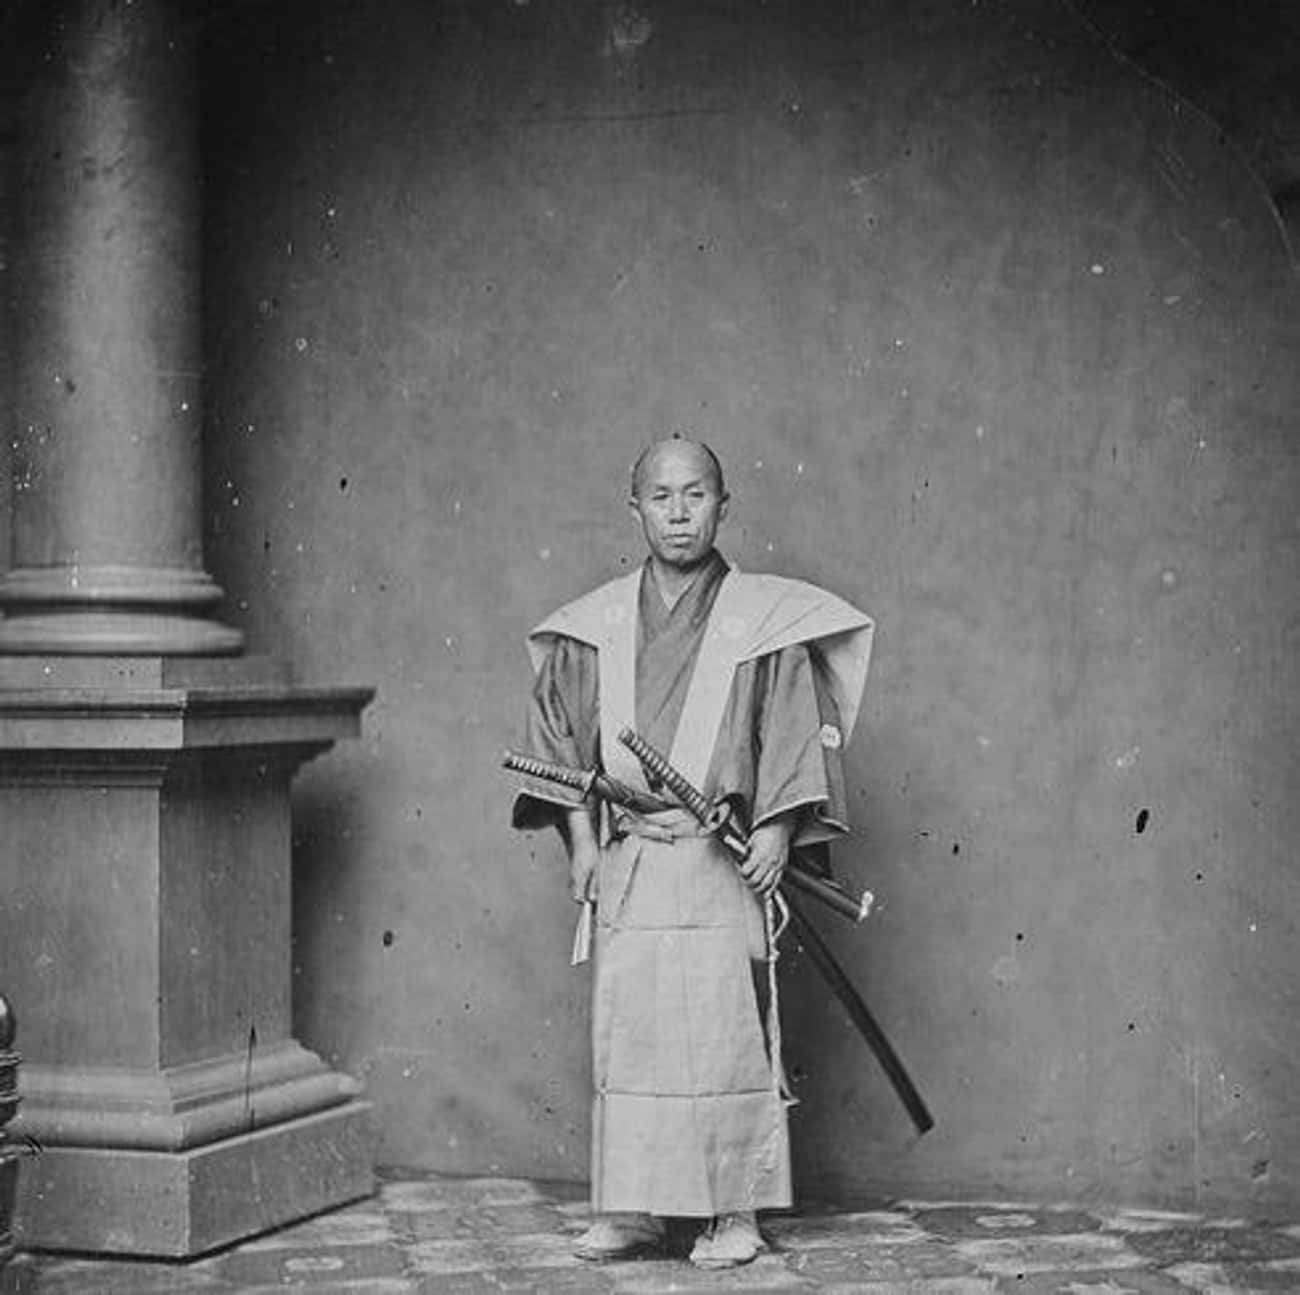 Samurayla genelde iki kılıç taşırlardı: Uzun Katana ve kısa WakizashiGeleneklere göre samuraylar, bir eve veya başka bir binaya girerken katanalarını bir hizmetçiye bırakmaları gerekirdi, ancak wakizashi (katanaların kısa versiyonları) her zaman ve her yerde taşınabilirdi. Wakizashi'ye genellikle samurayın sağ kolu denmesinin nedeni budur.